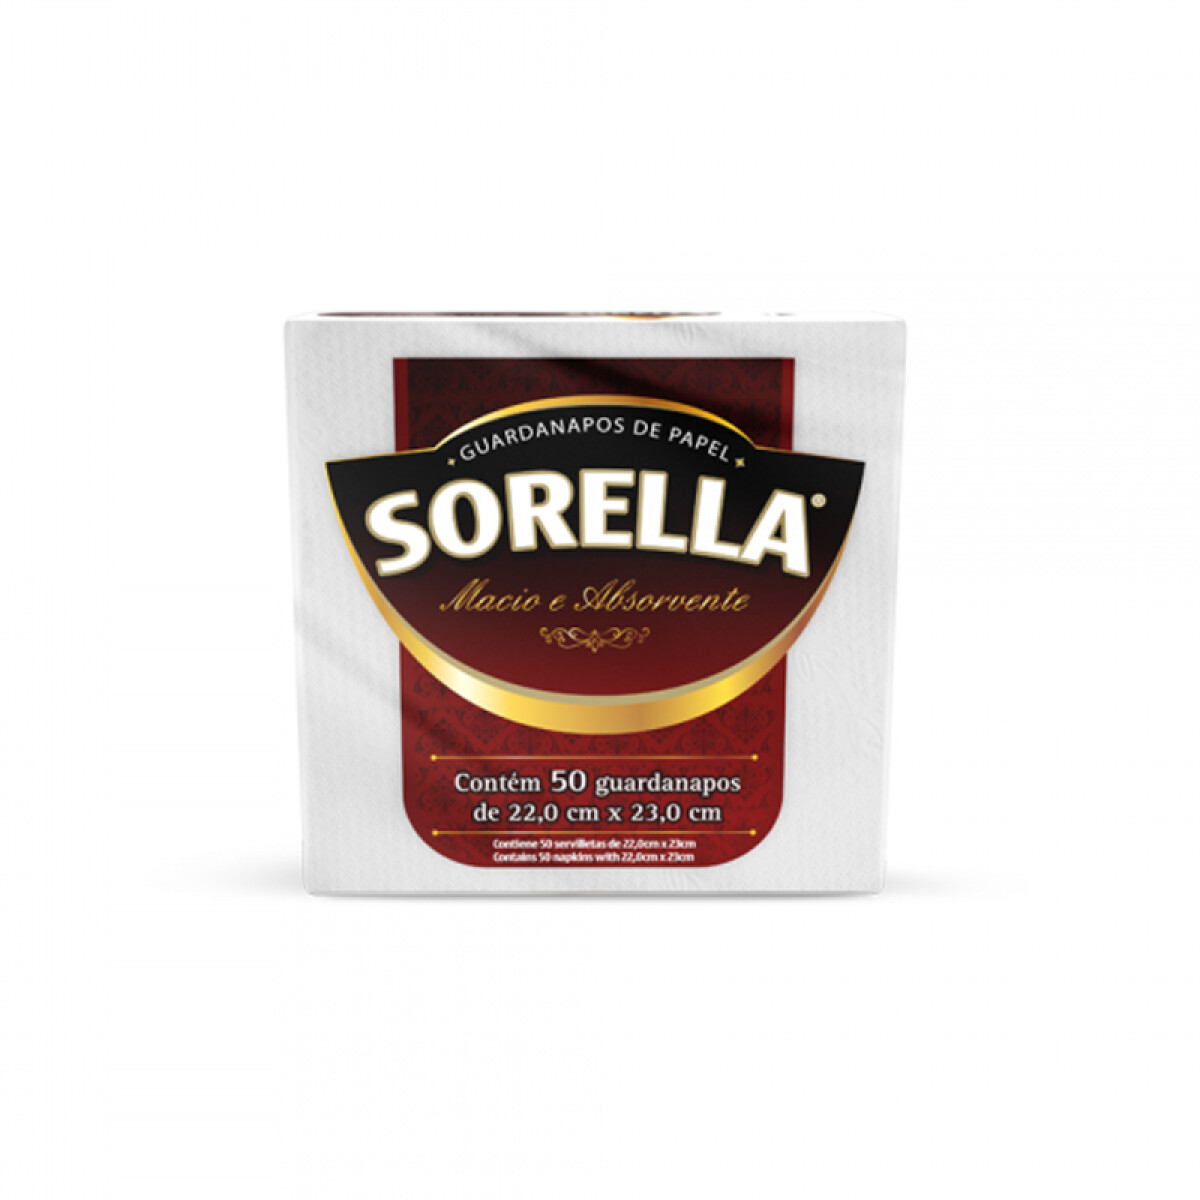 Servilleta SORELLA x50pcs (22x23cm) 